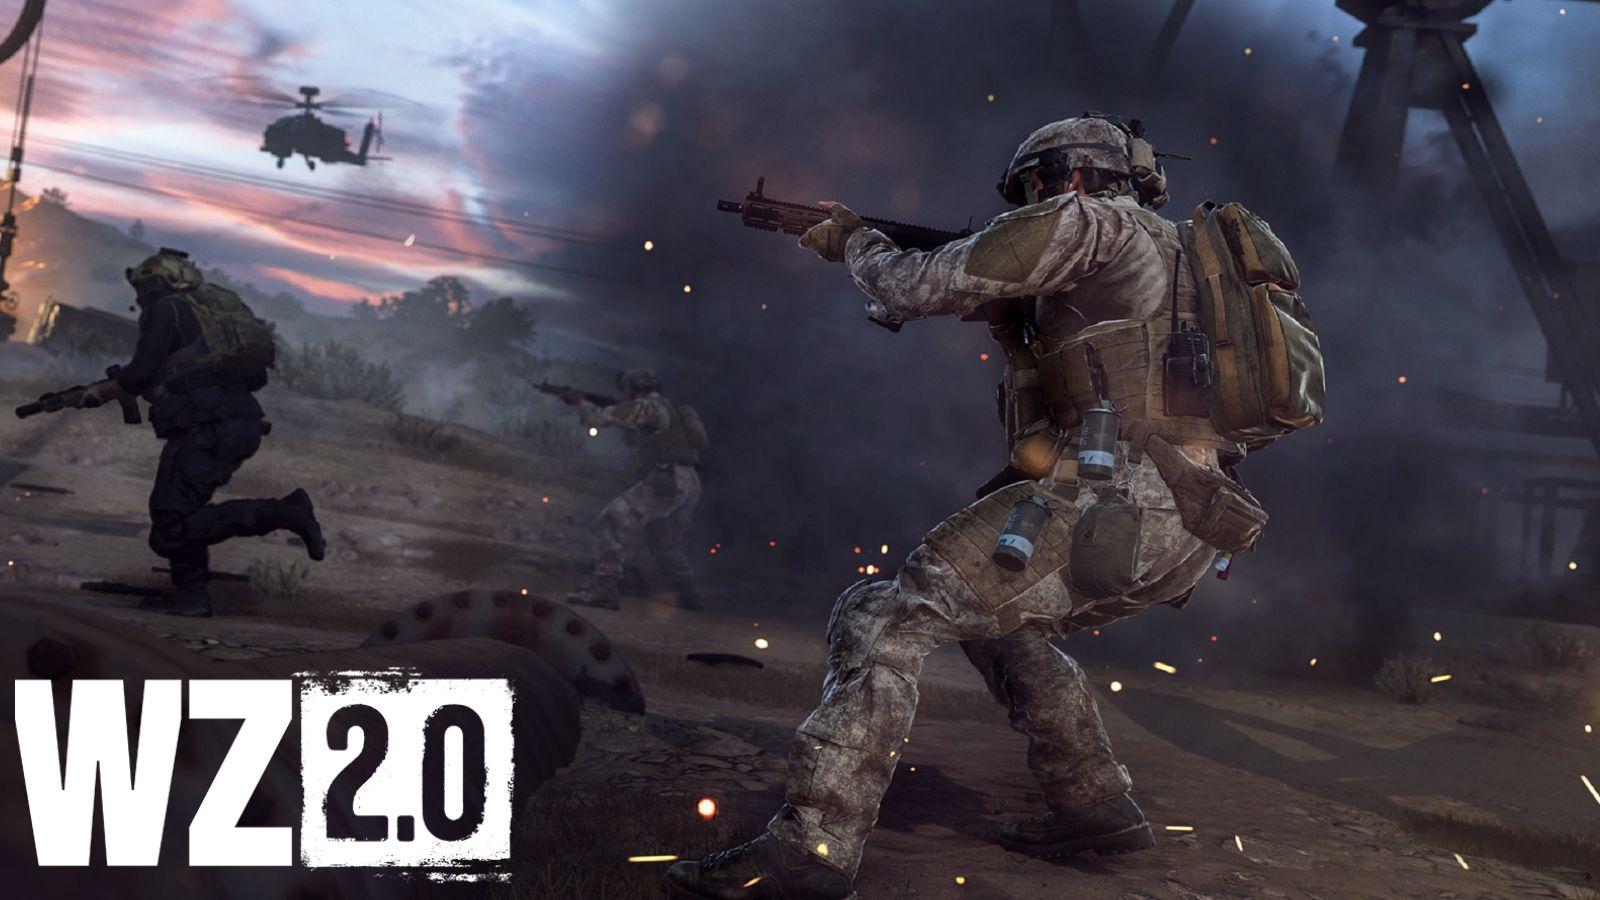 All Battle Pass Rewards In Modern Warfare 2 Season 1 and Warzone 2